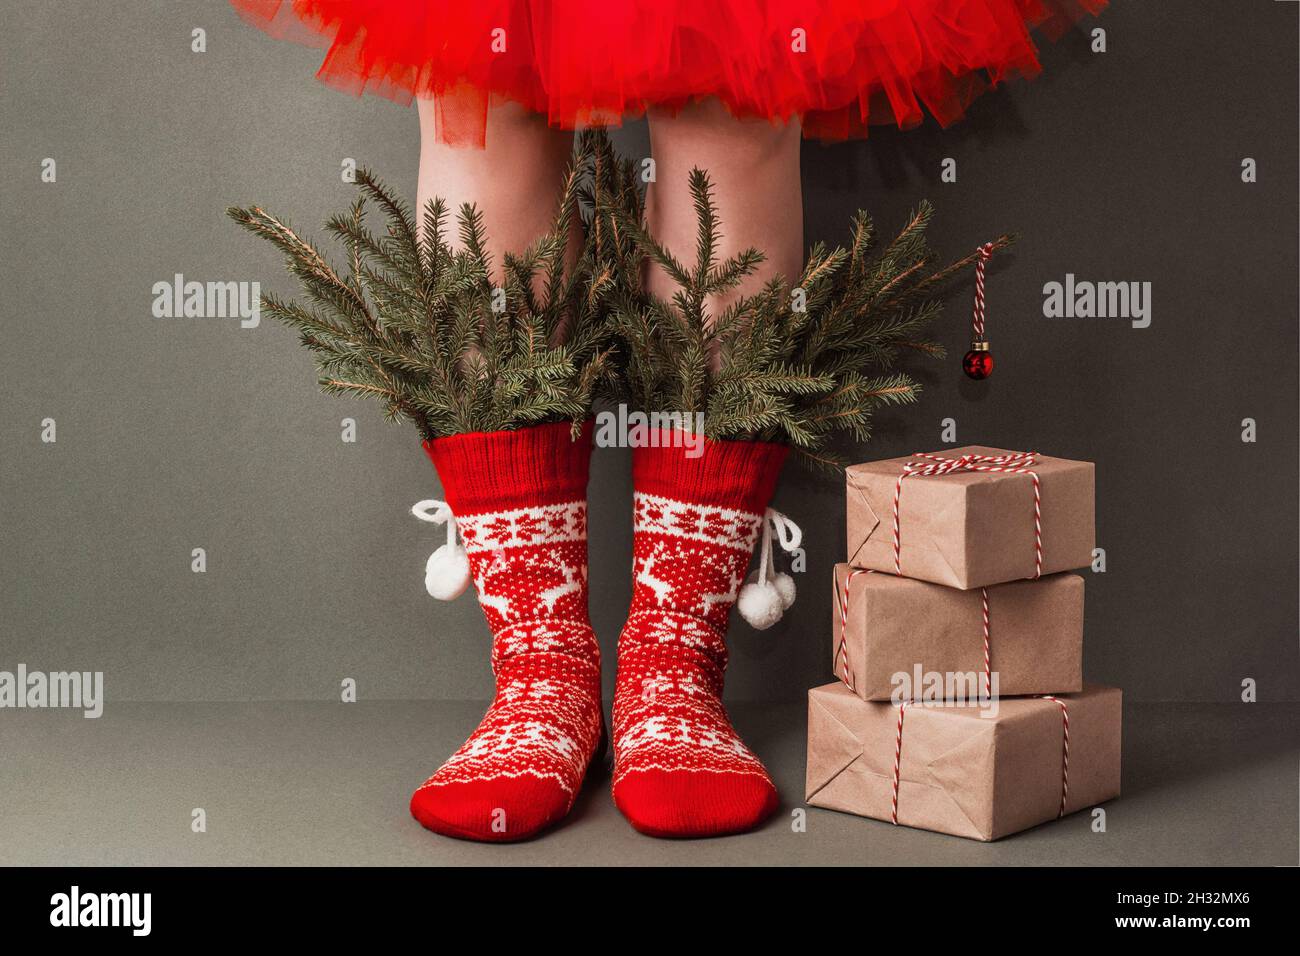 Pierna de mujer en calcetines rojos de navidad sobre fondo azul aislado.